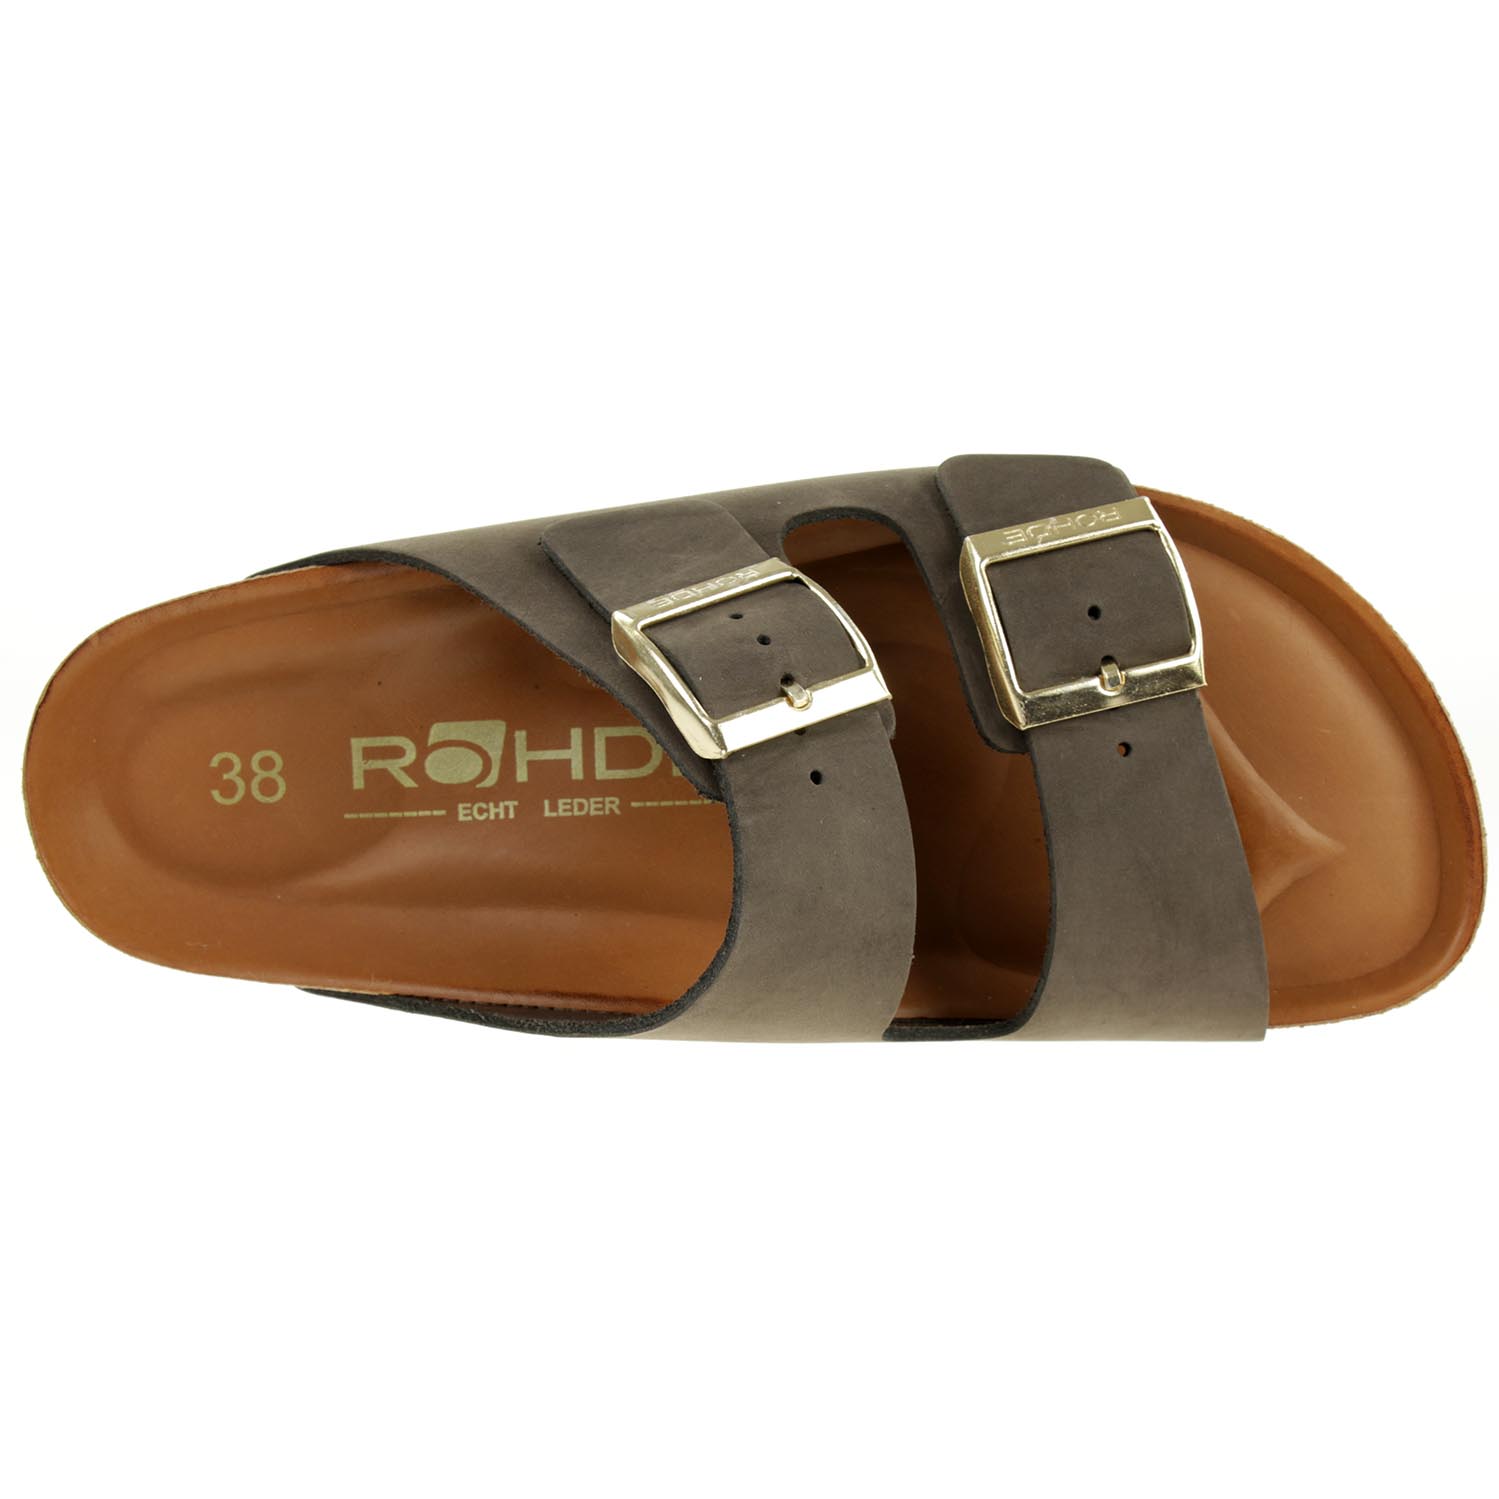 Rohde Alba Pantolette Damen Hausschuhe Sandale Leder 565014 mocca